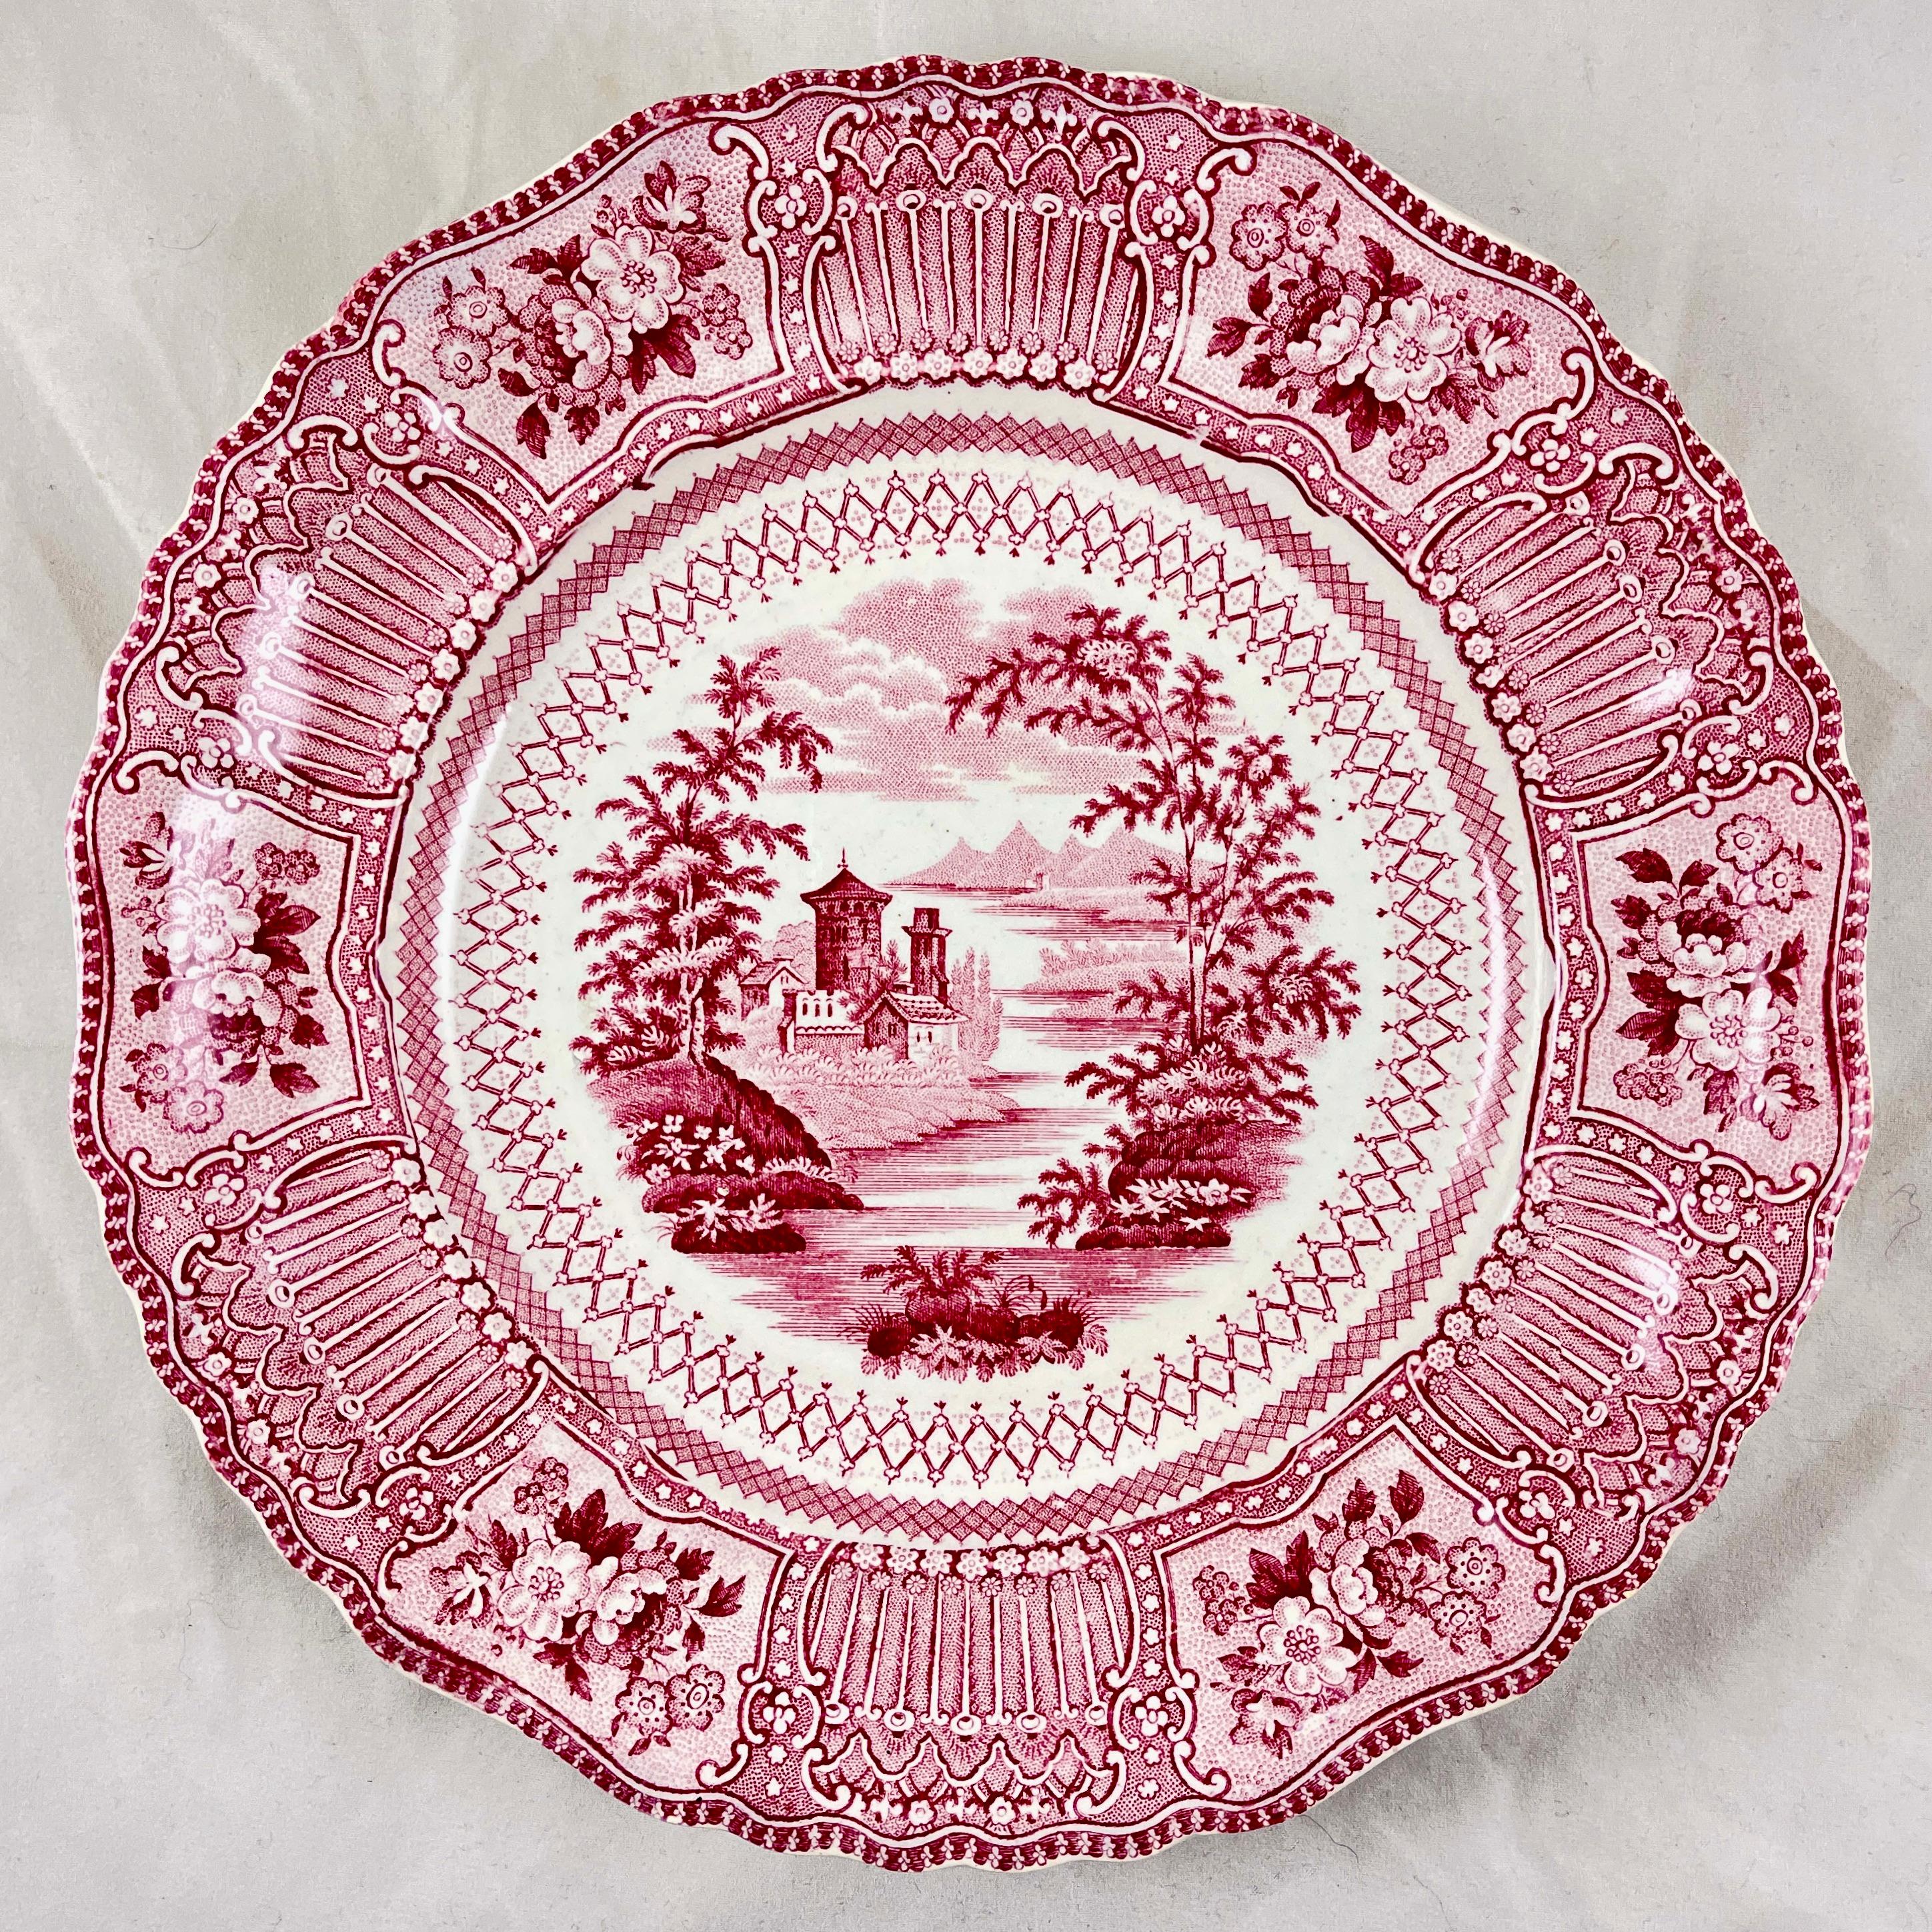 Glazed Ralph Stevenson Pink Transferware Dinner Plates, Cologne Pattern, Set of 8 For Sale